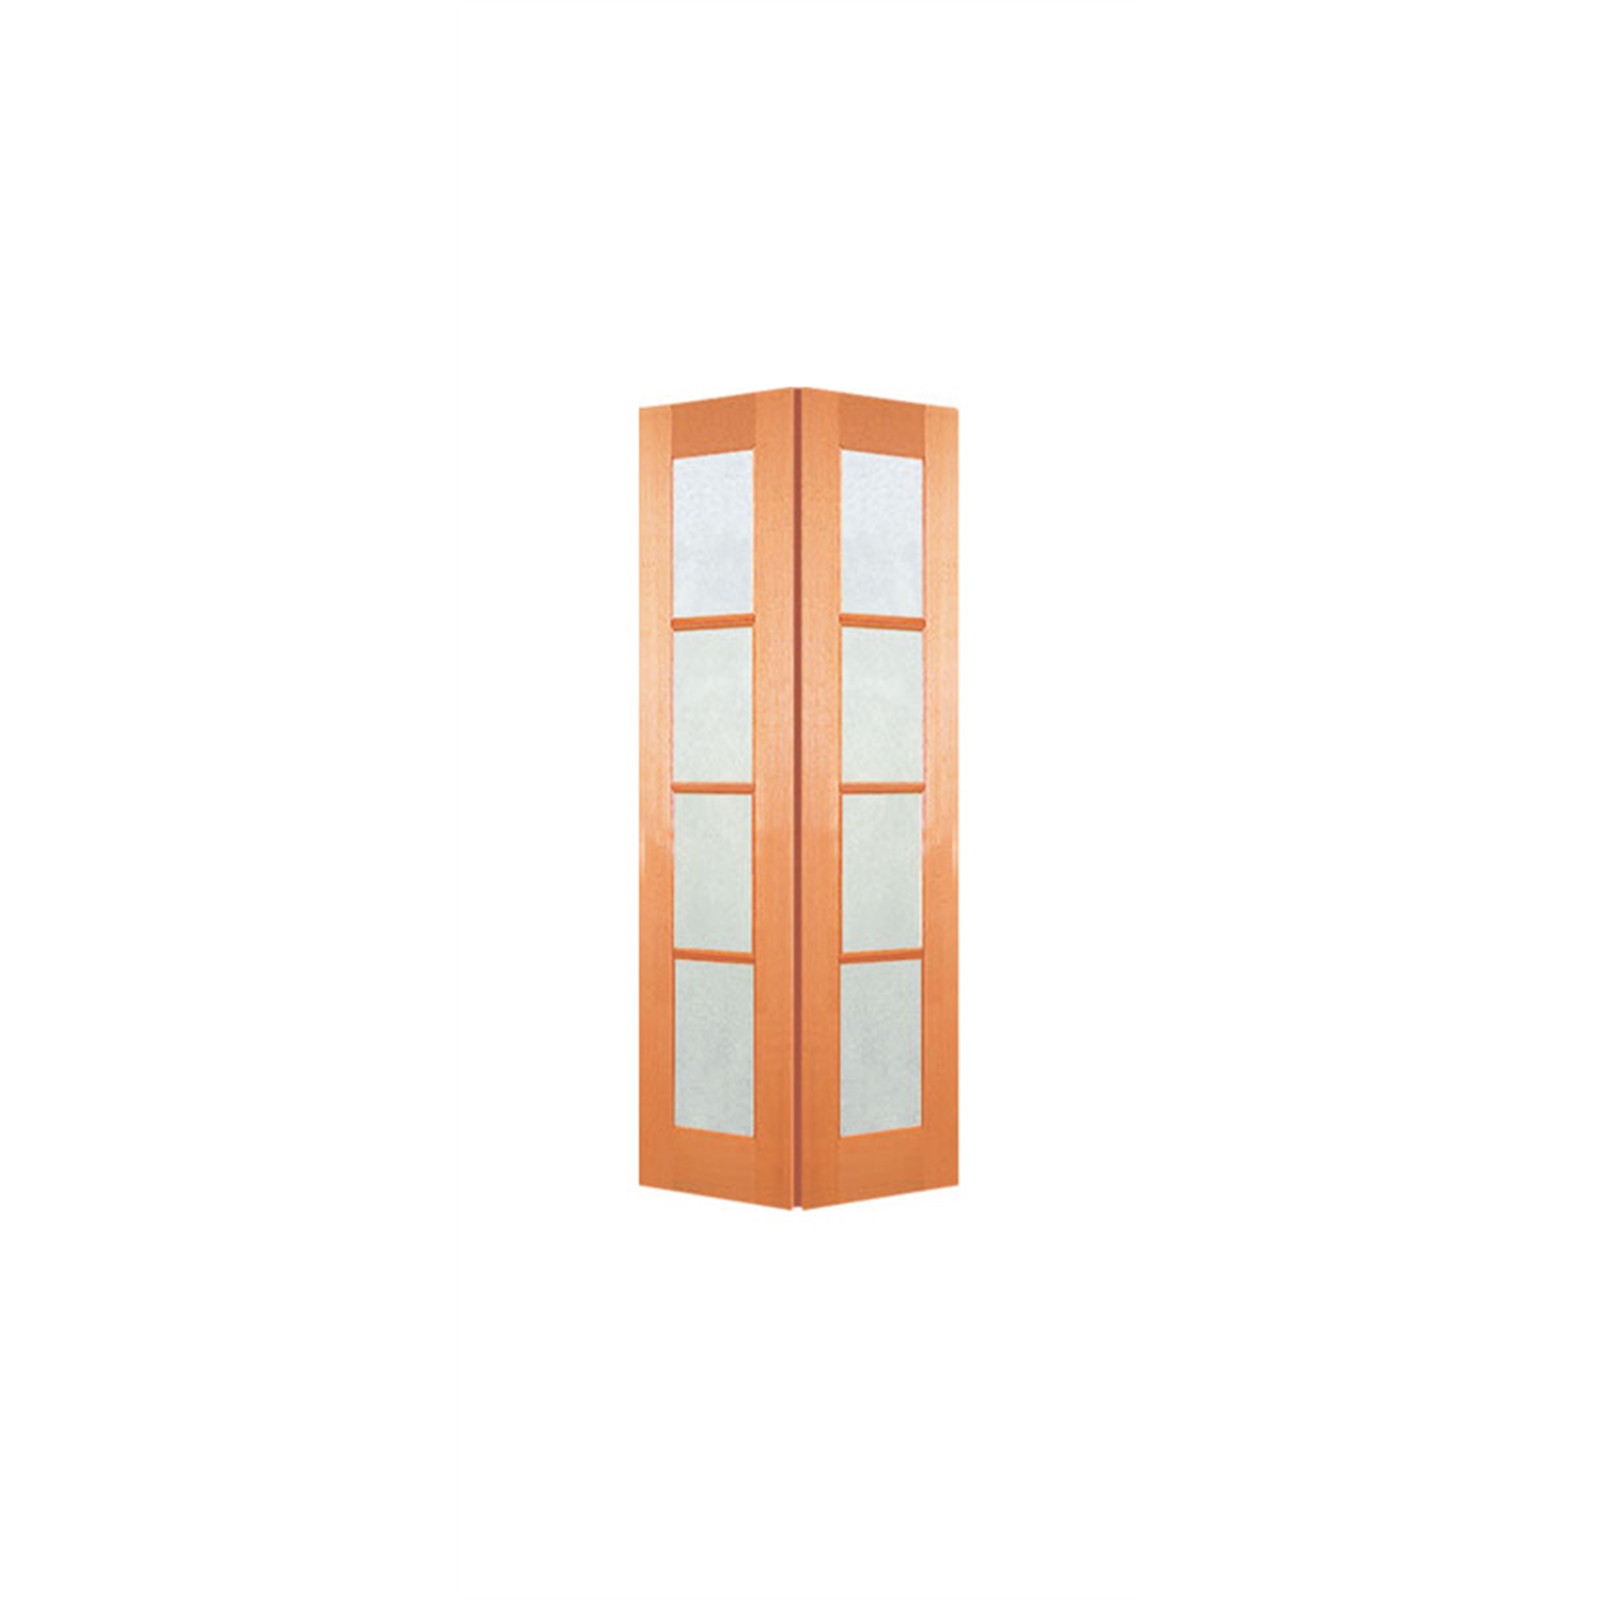 Woodcraft Doors 2040 x 820 x 35mm 4 Lite Frosted Safety Glass Internal Bi-Fold Door